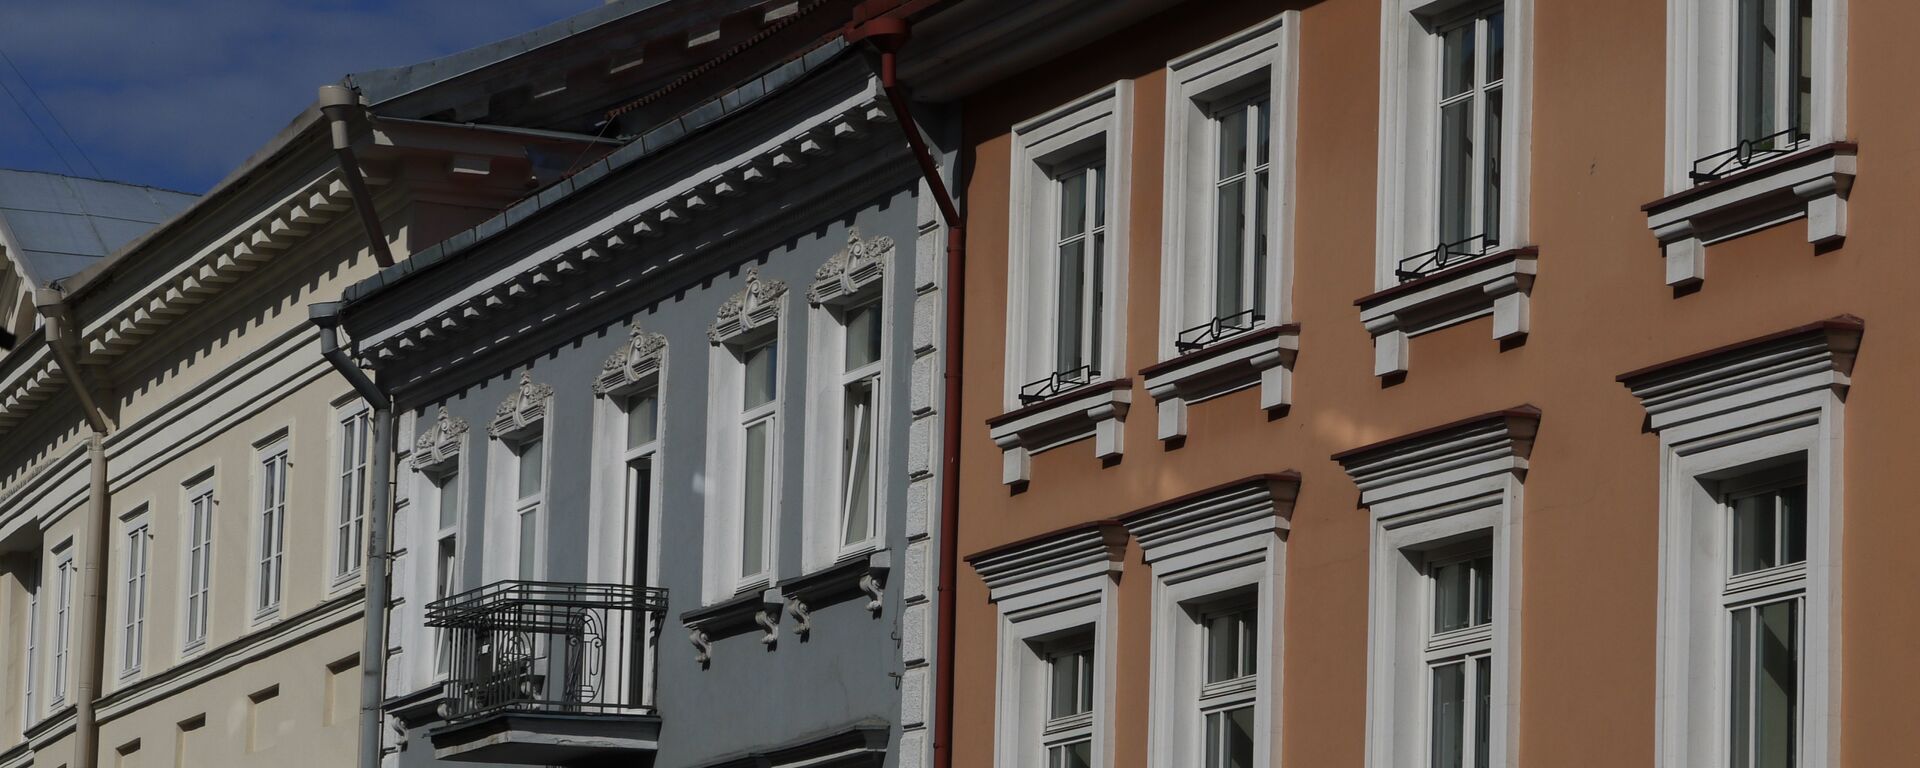 Жилые здания в Вильнюсе - Sputnik Lietuva, 1920, 30.10.2021